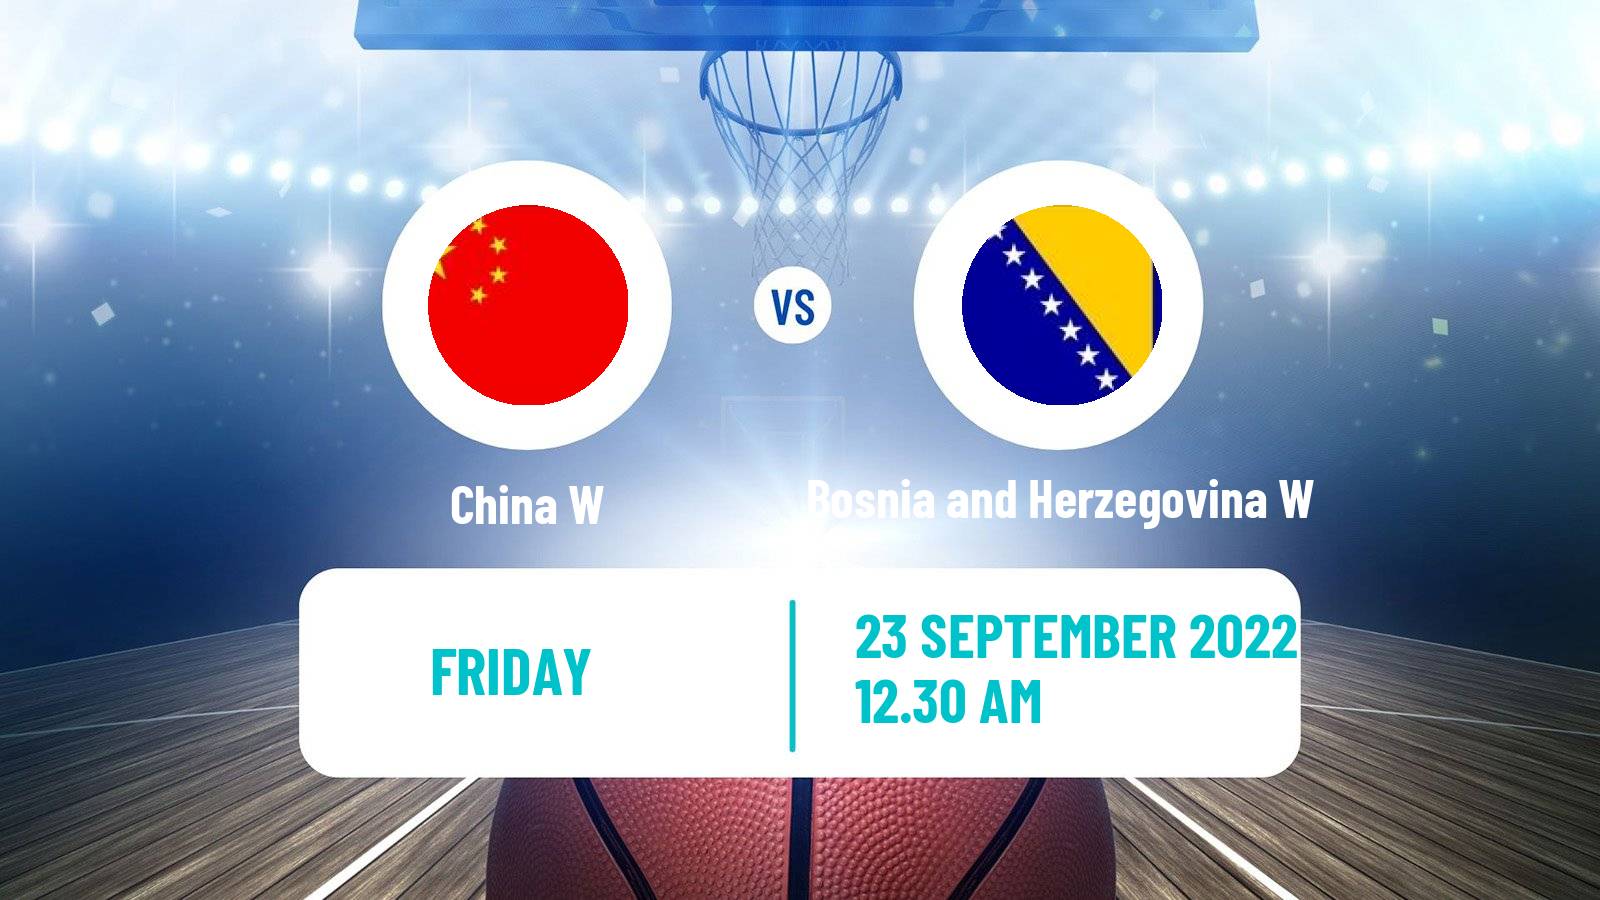 Basketball World Cup Basketball Women China W - Bosnia and Herzegovina W